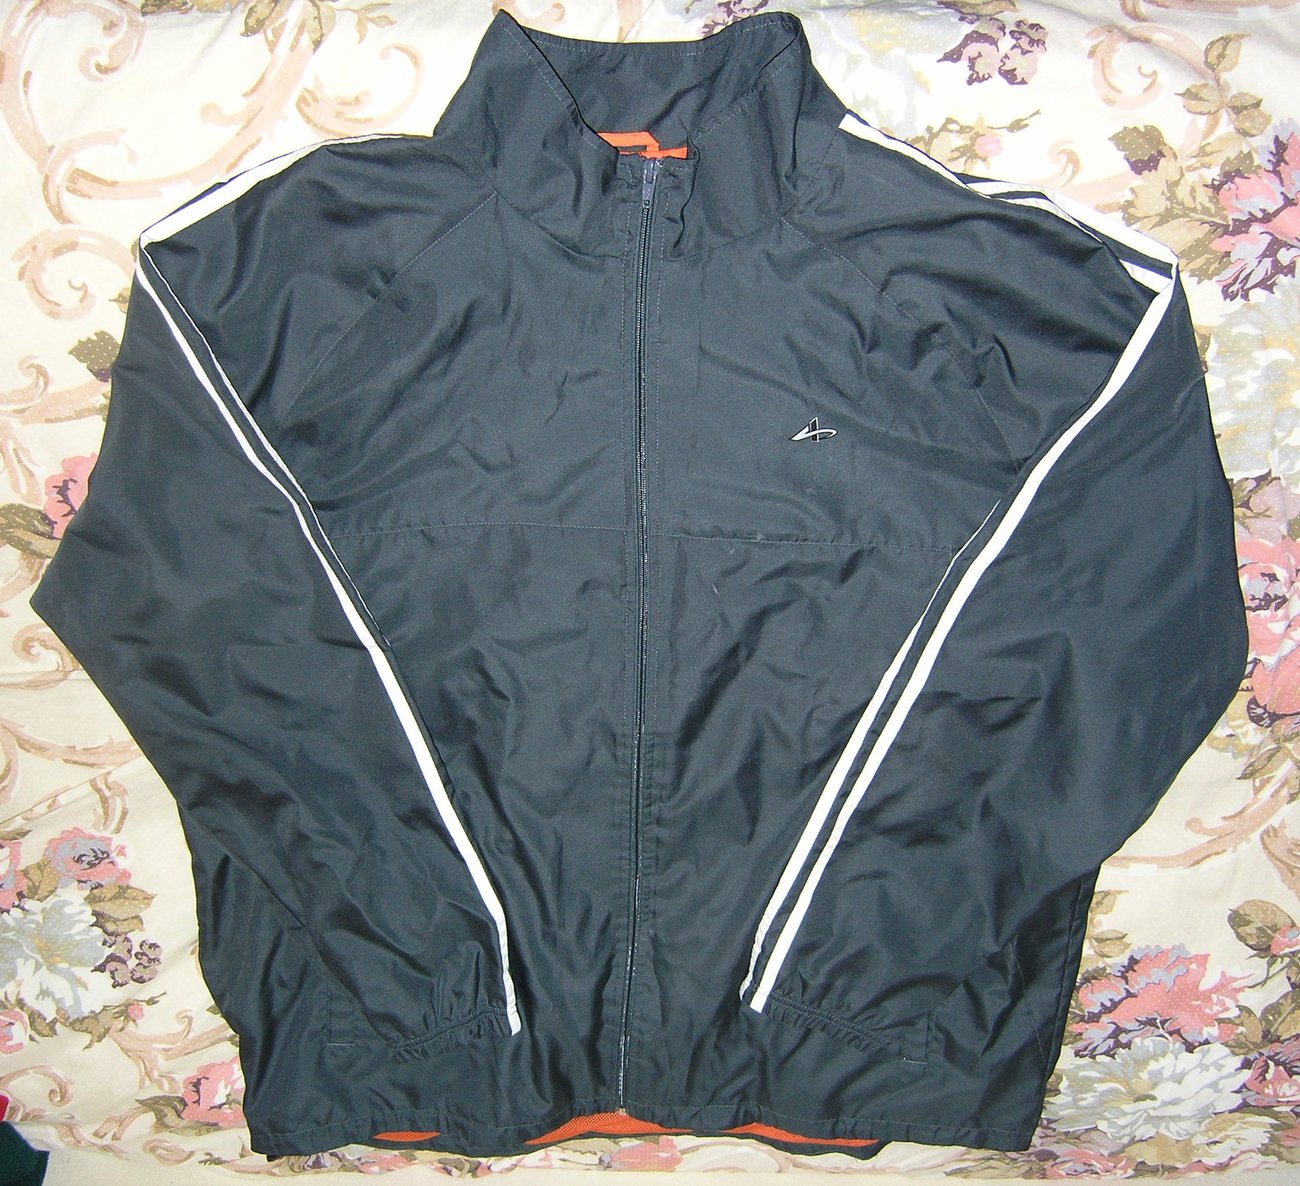 athletech jacket